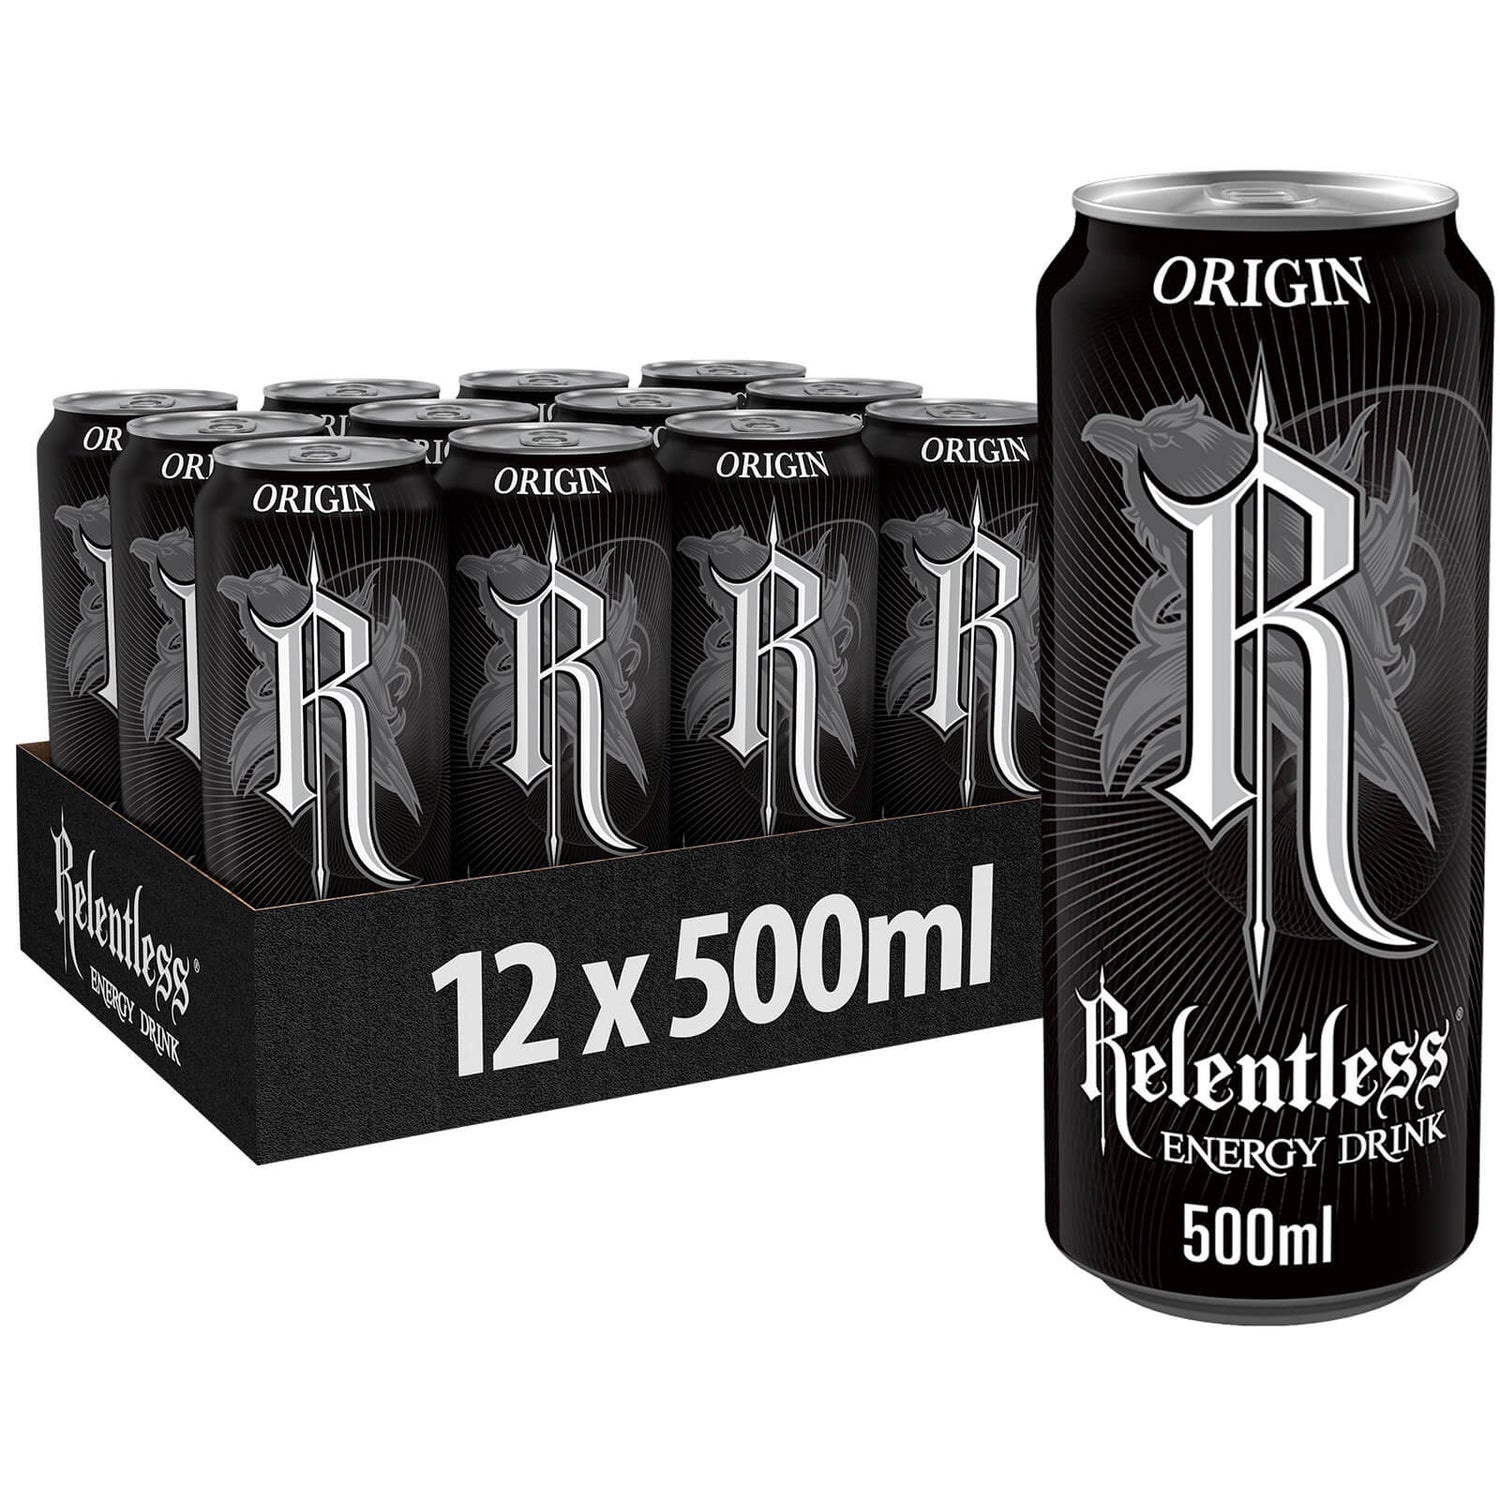 Relentless Origin Energy Drink 12 x 500ml